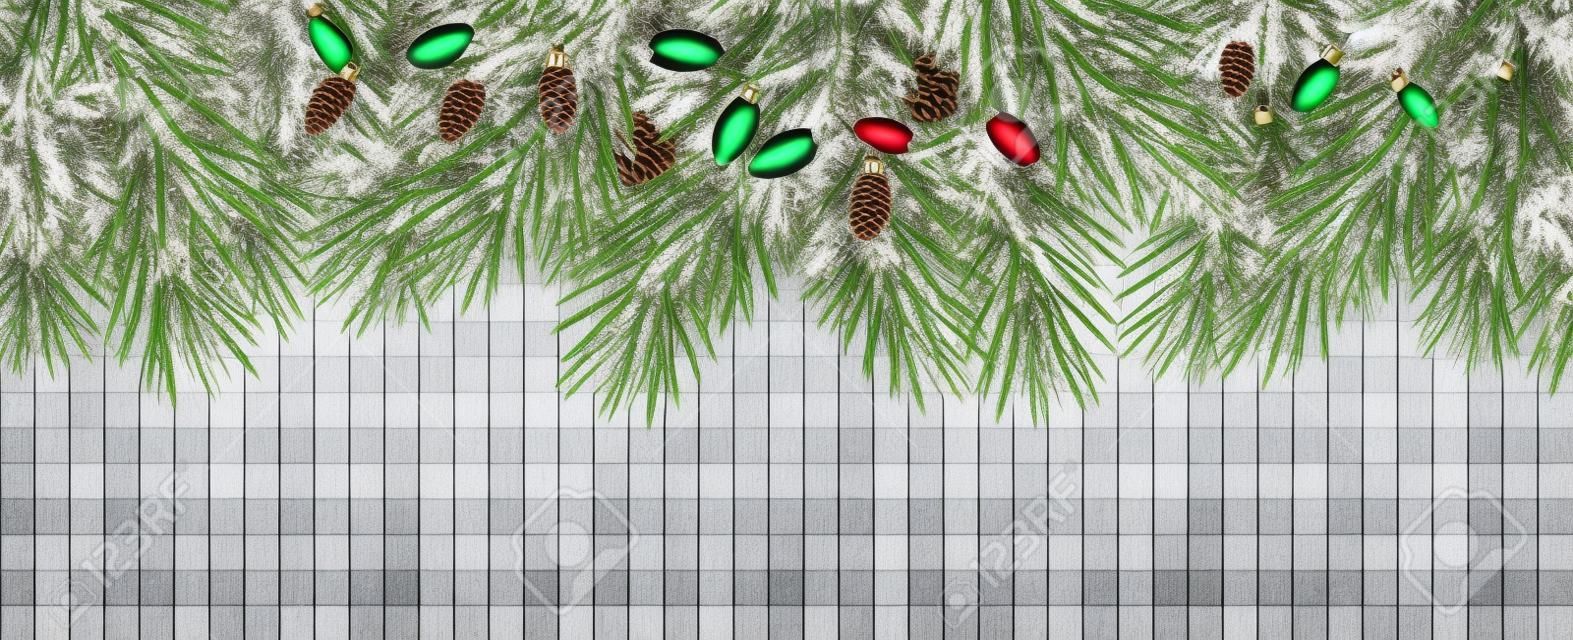 Рождественская рамка с еловыми ветками и сосновыми шишками на прозрачном фоне